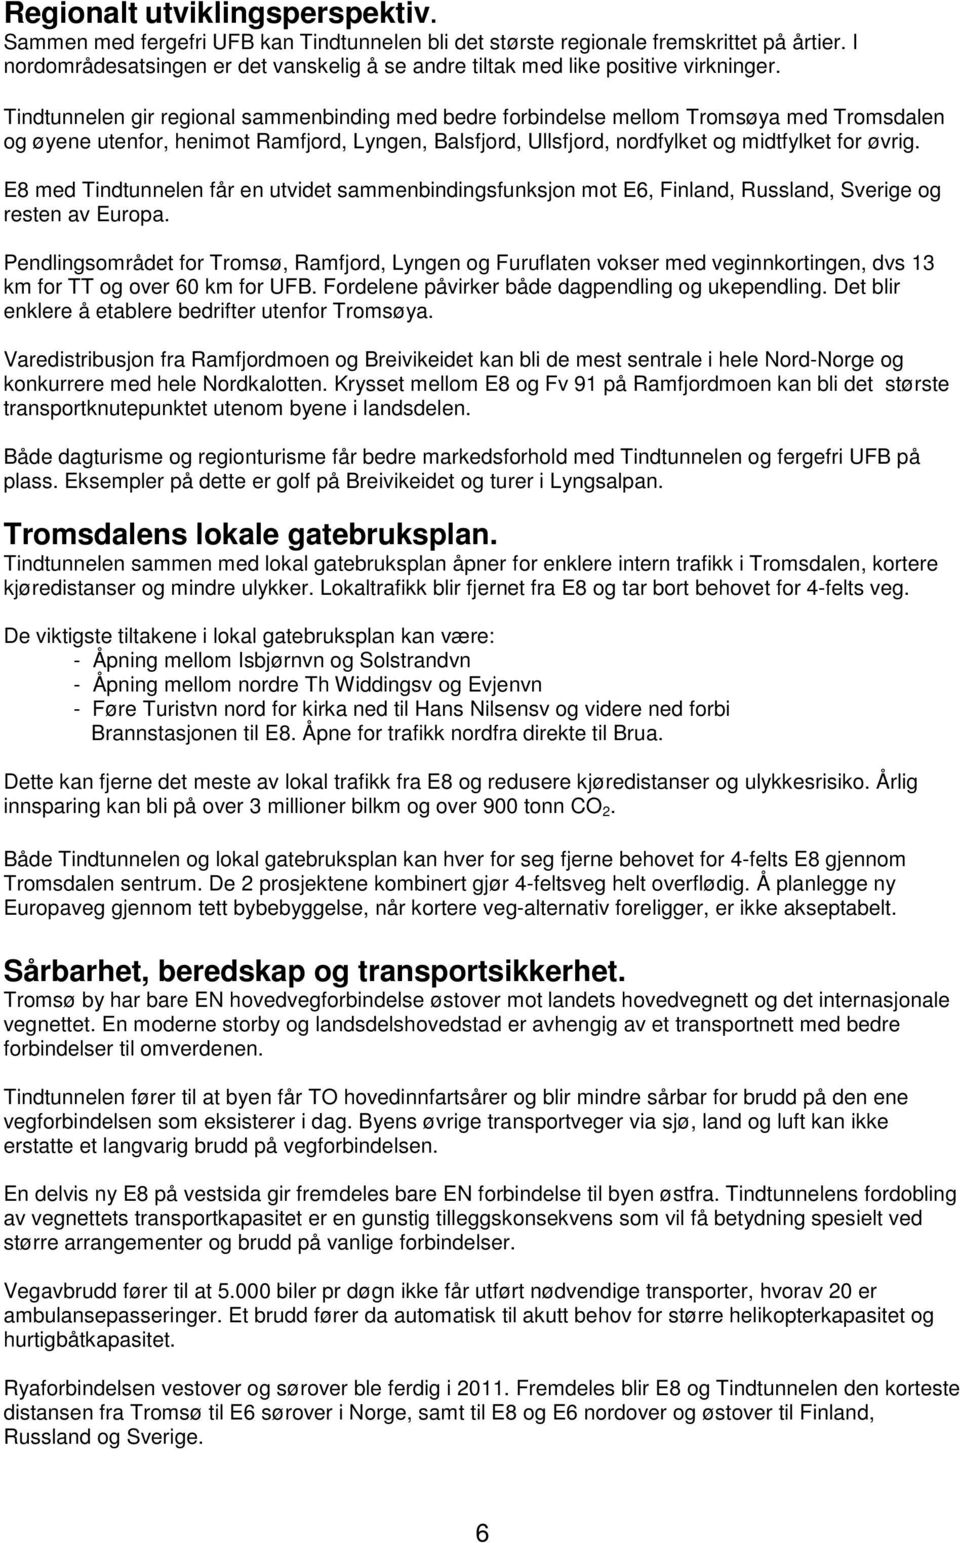 Tindtunnelen gir regional sammenbinding med bedre forbindelse mellom Tromsøya med Tromsdalen og øyene utenfor, henimot Ramfjord, Lyngen, Balsfjord, Ullsfjord, nordfylket og midtfylket for øvrig.